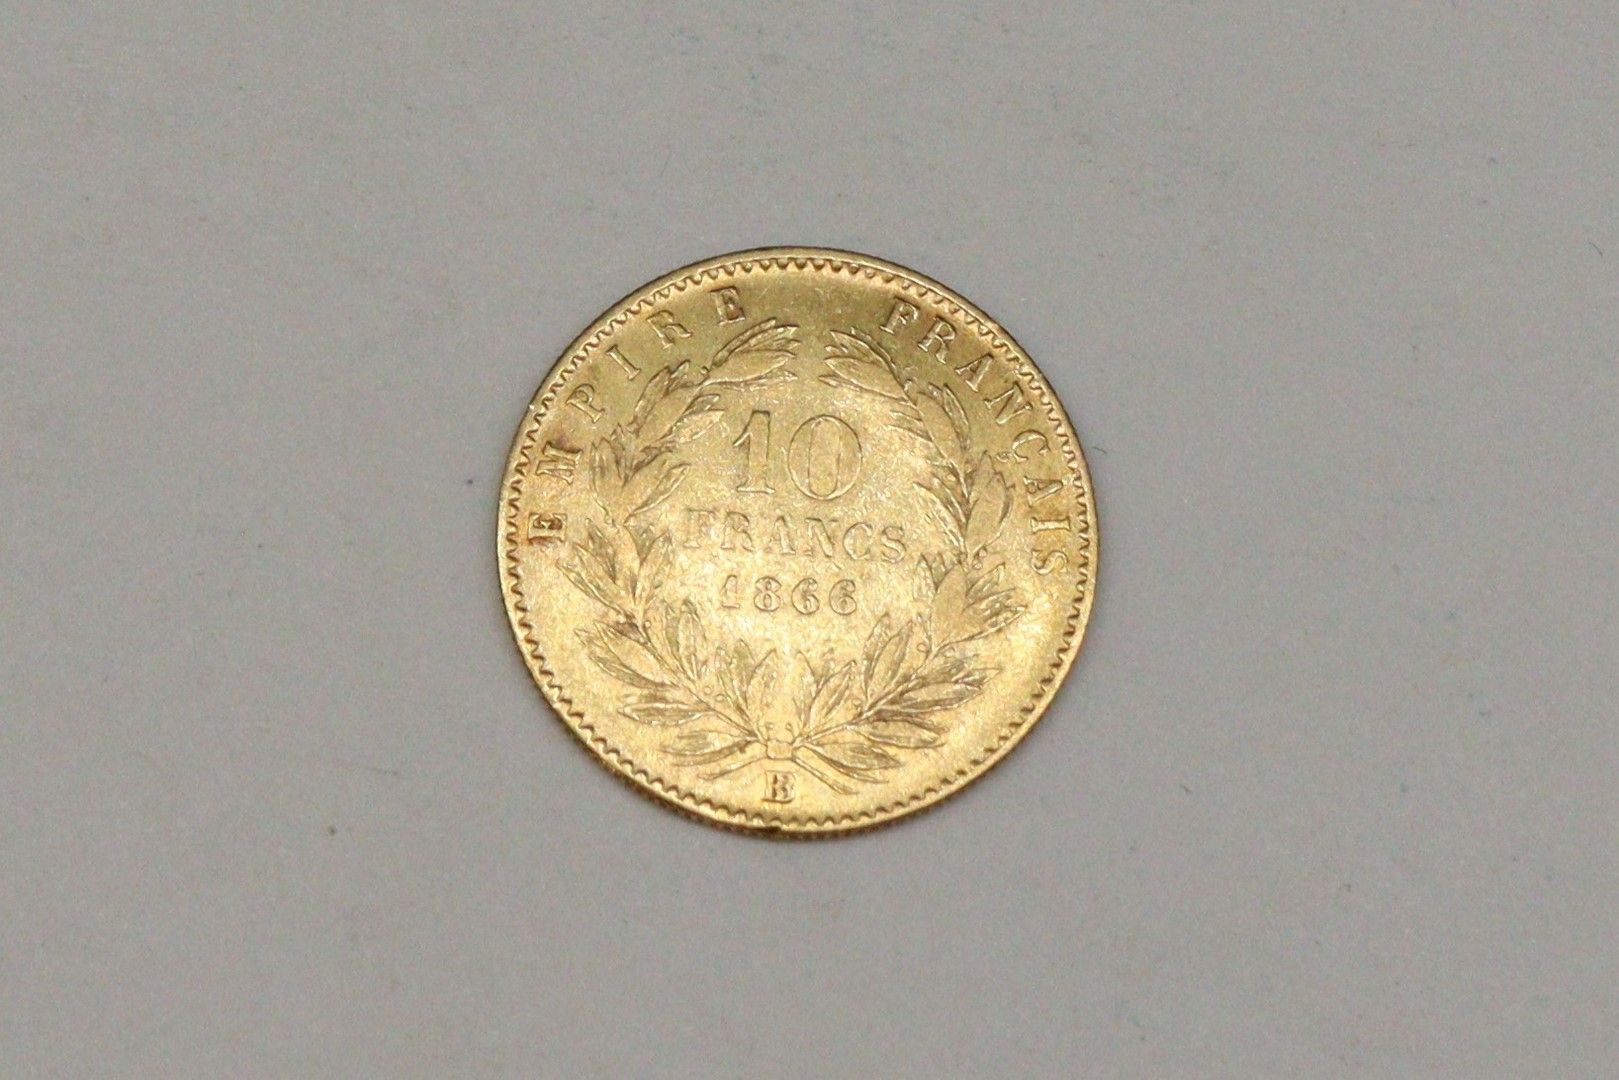 Null Moneta d'oro da 10 franchi Testa di Napoleone III (1866)